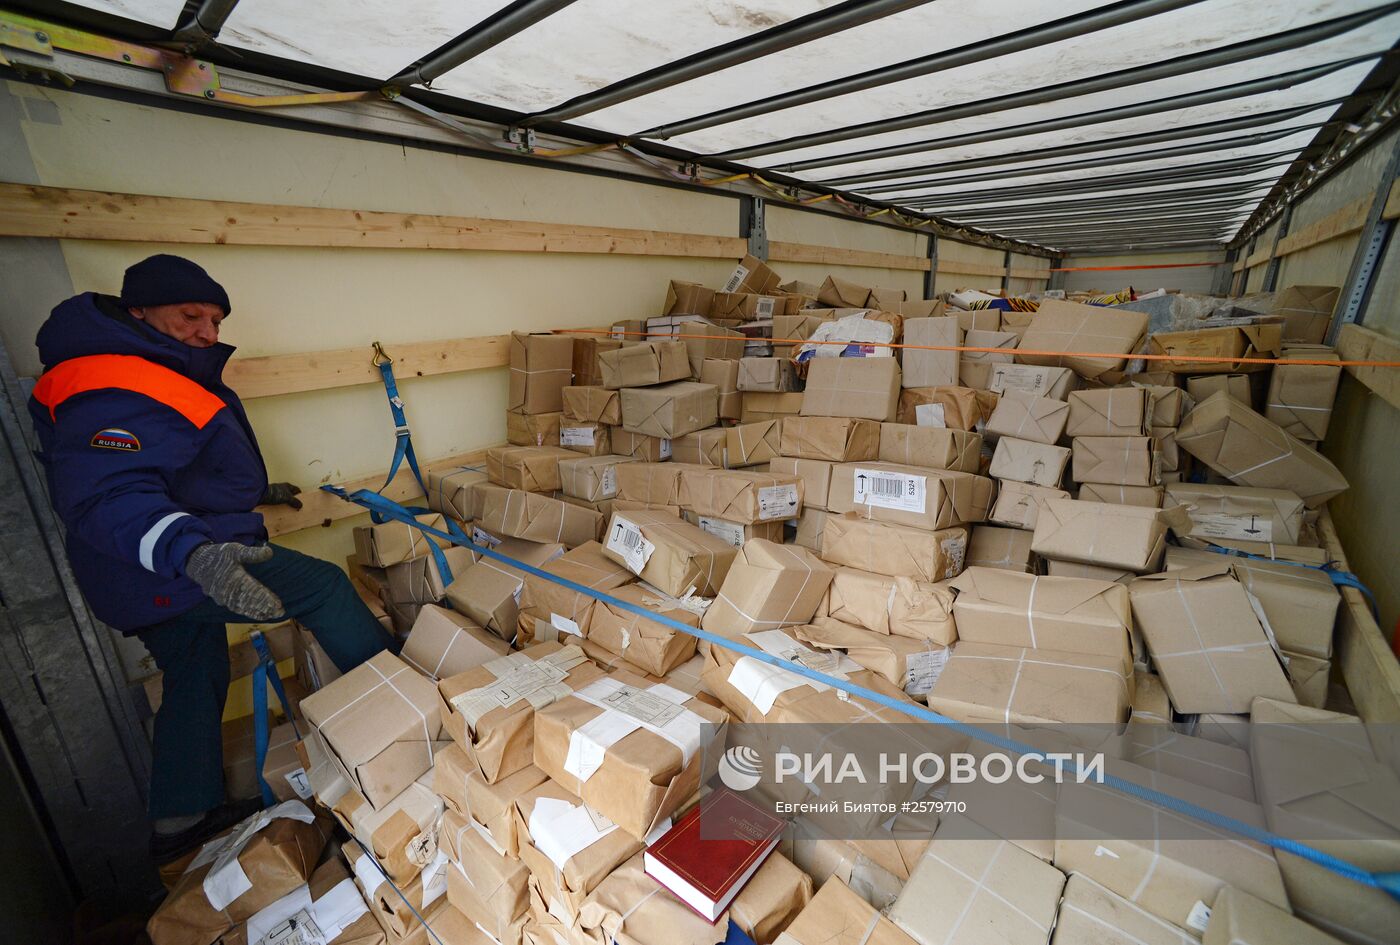 Шестнадцатый гуманитарный конвой для жителей юго-востока Украины сформирован в Ростовской области